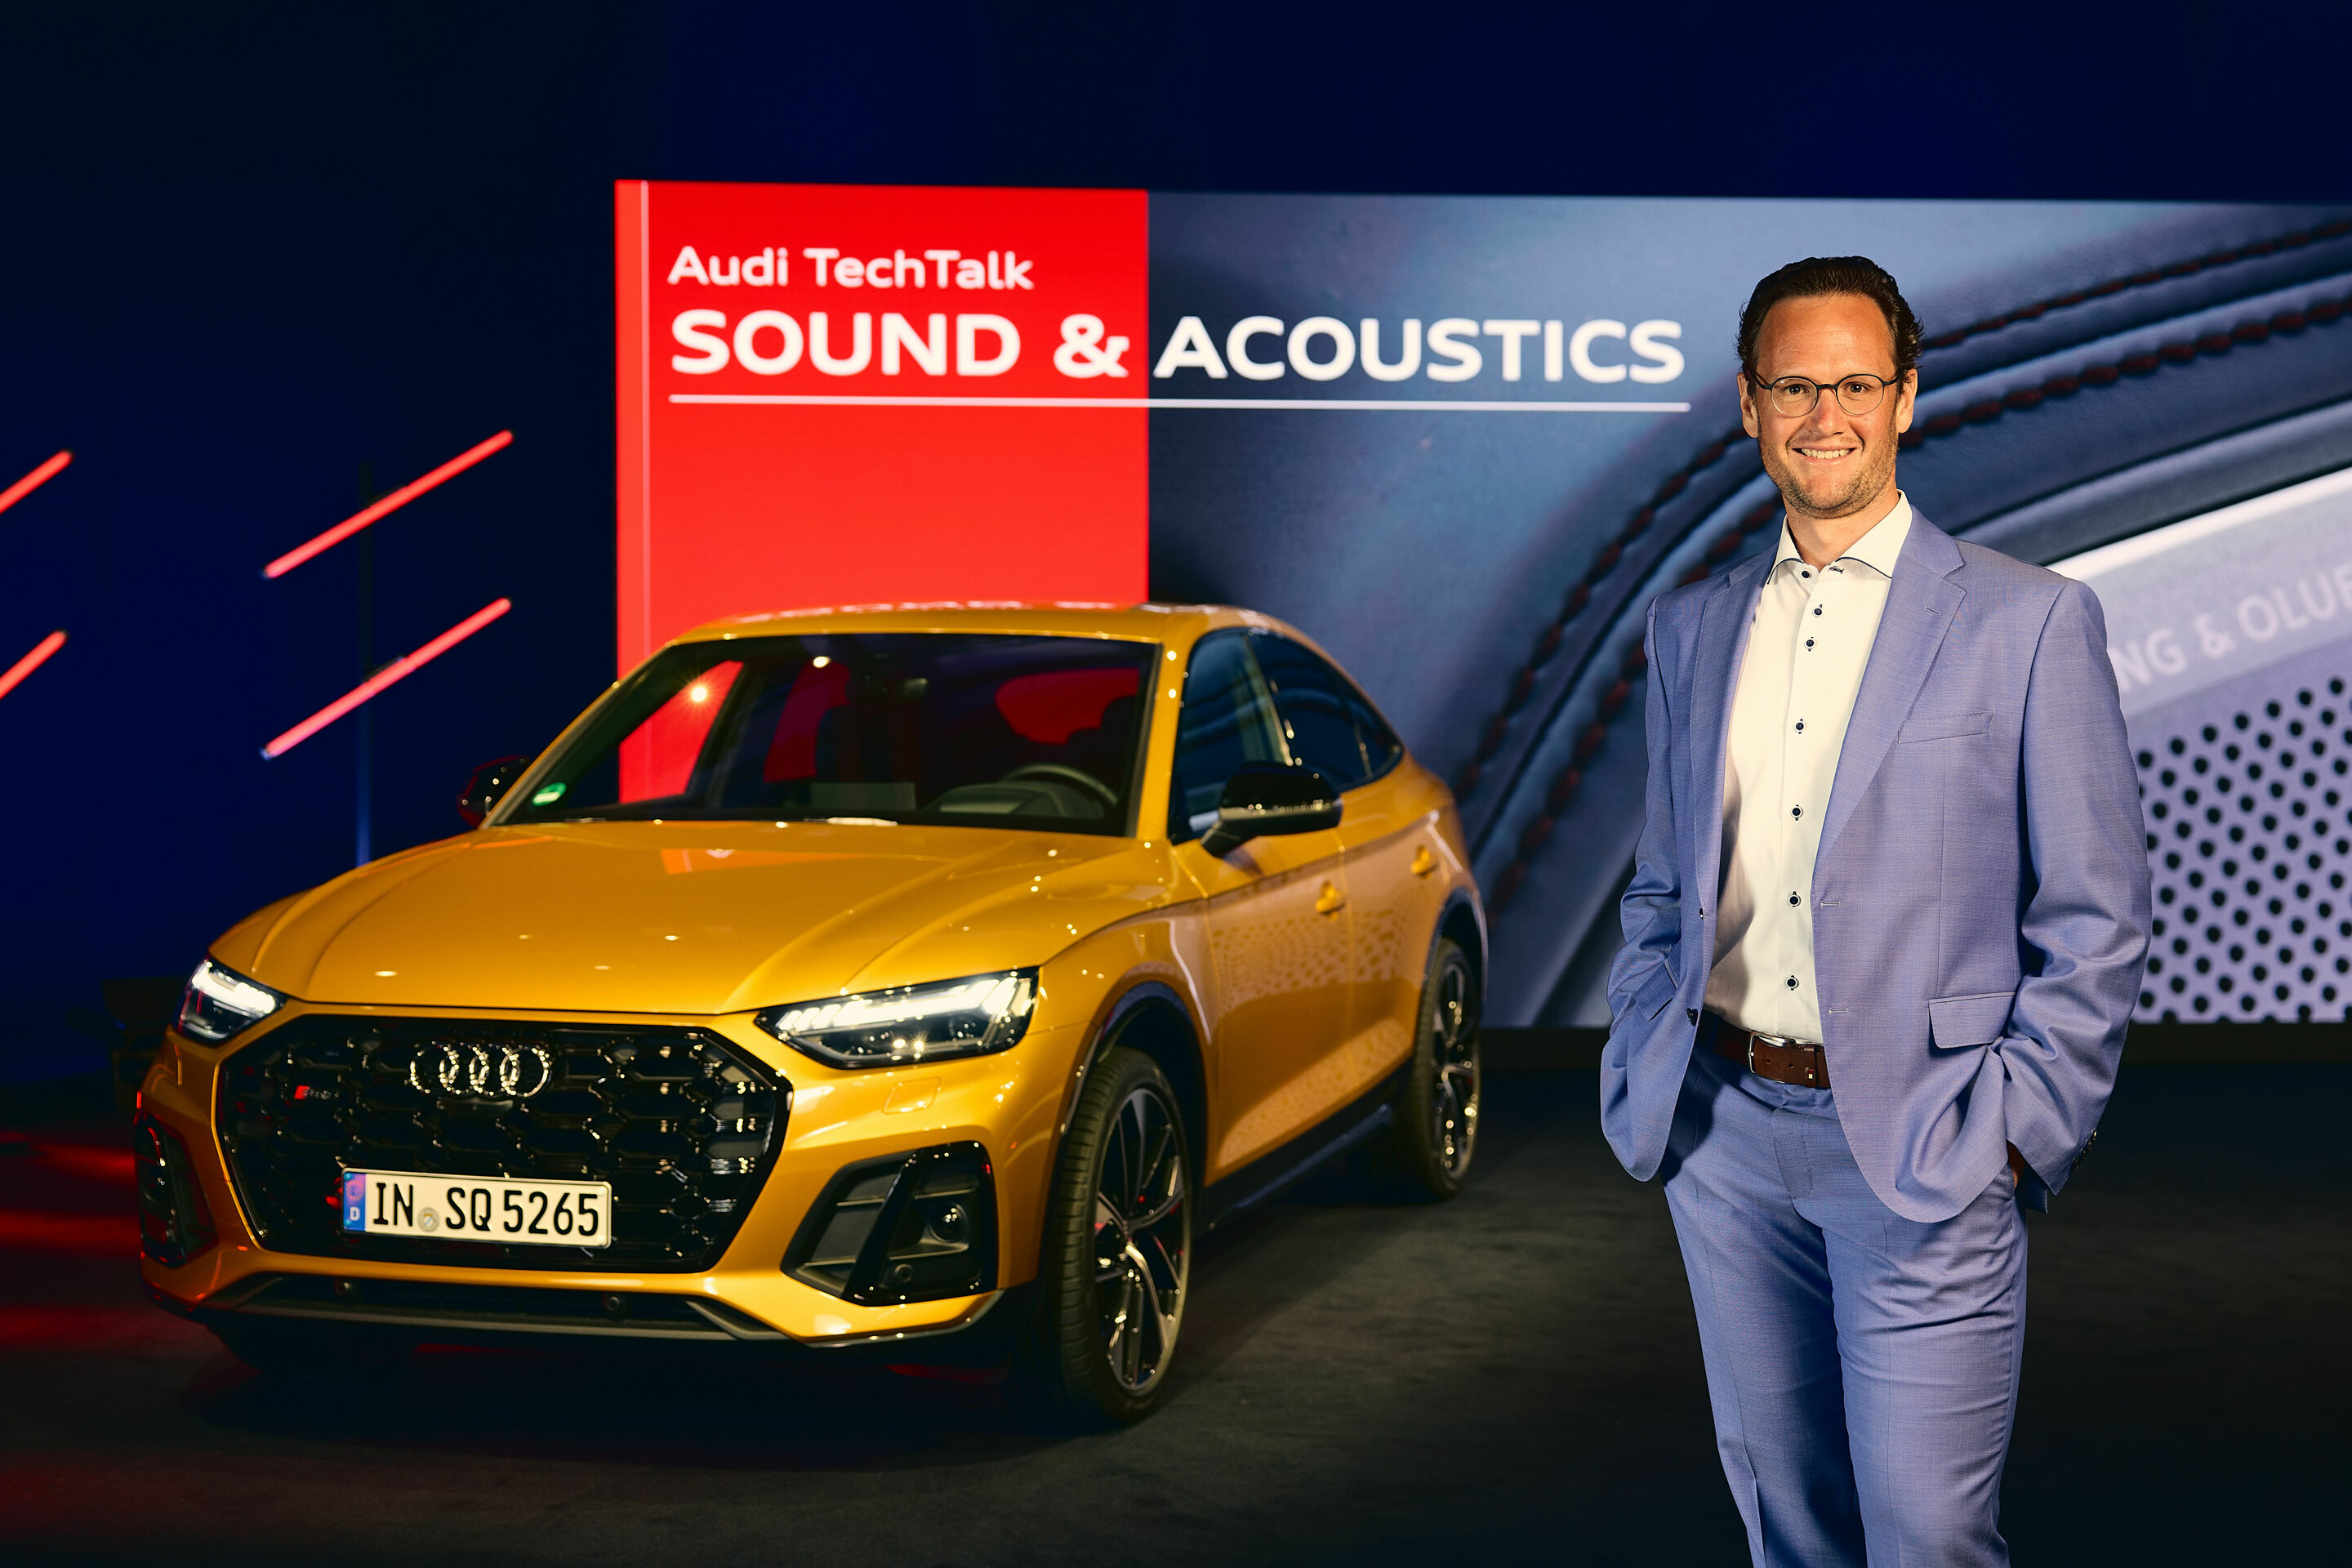 Audi TechTalk Sound & Acoustics